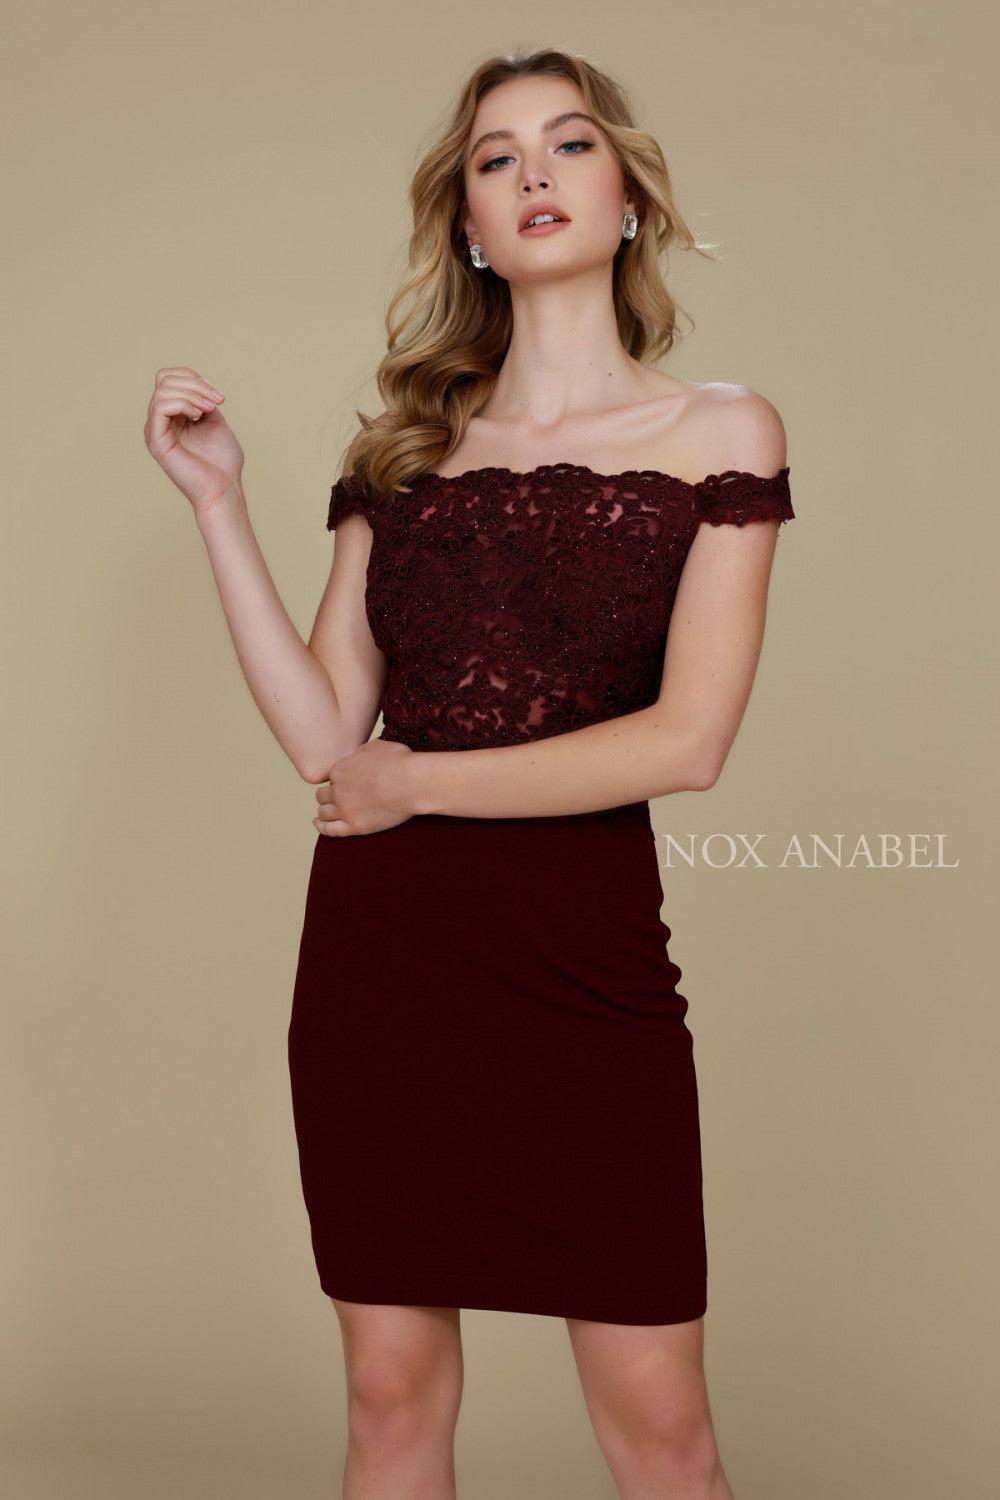 Short Off The Shoulder Formal Cocktail Dress - The Dress Outlet Nox Anabel